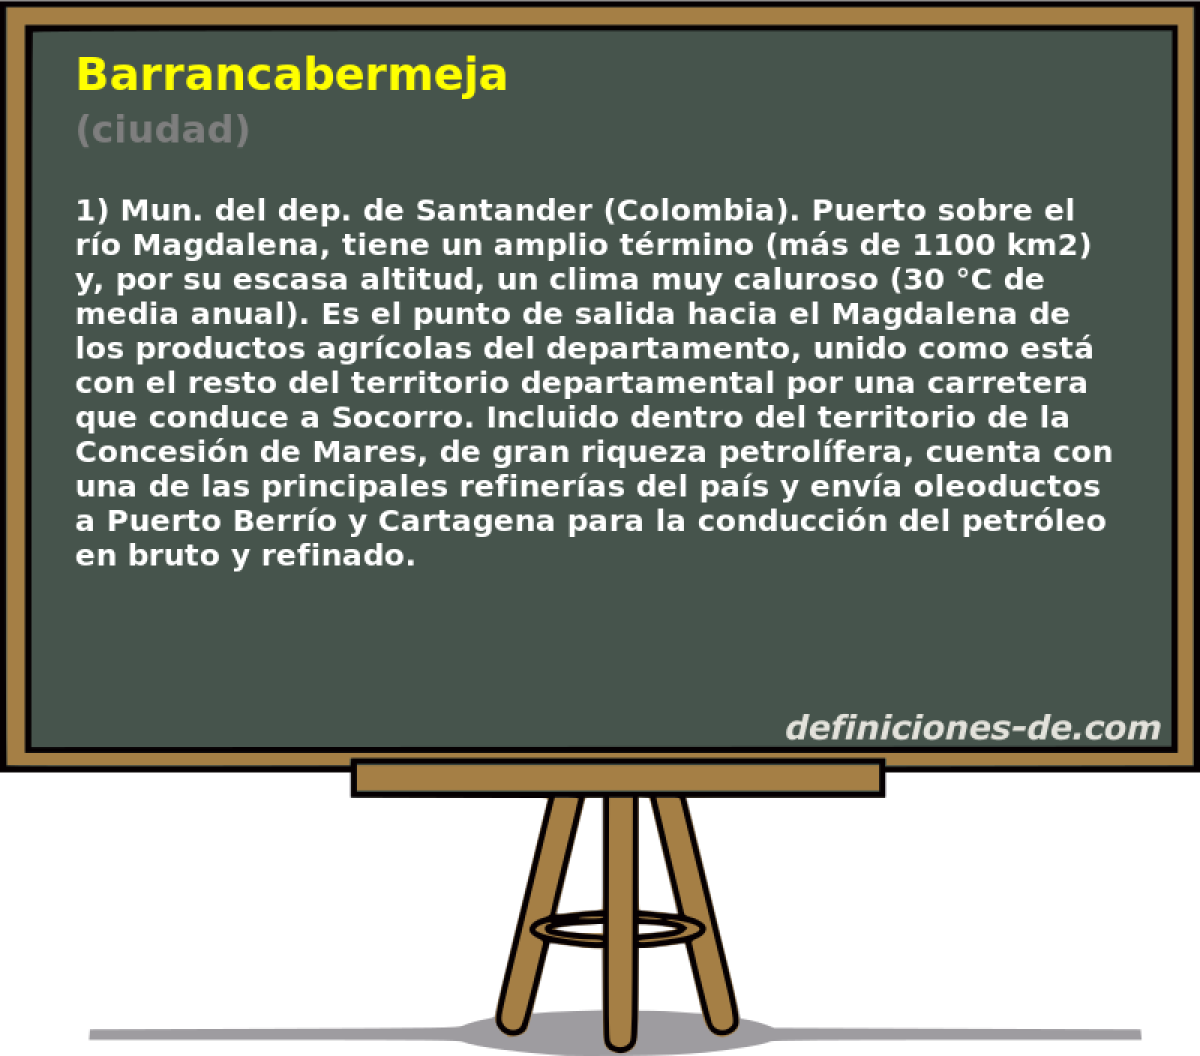 Barrancabermeja (ciudad)